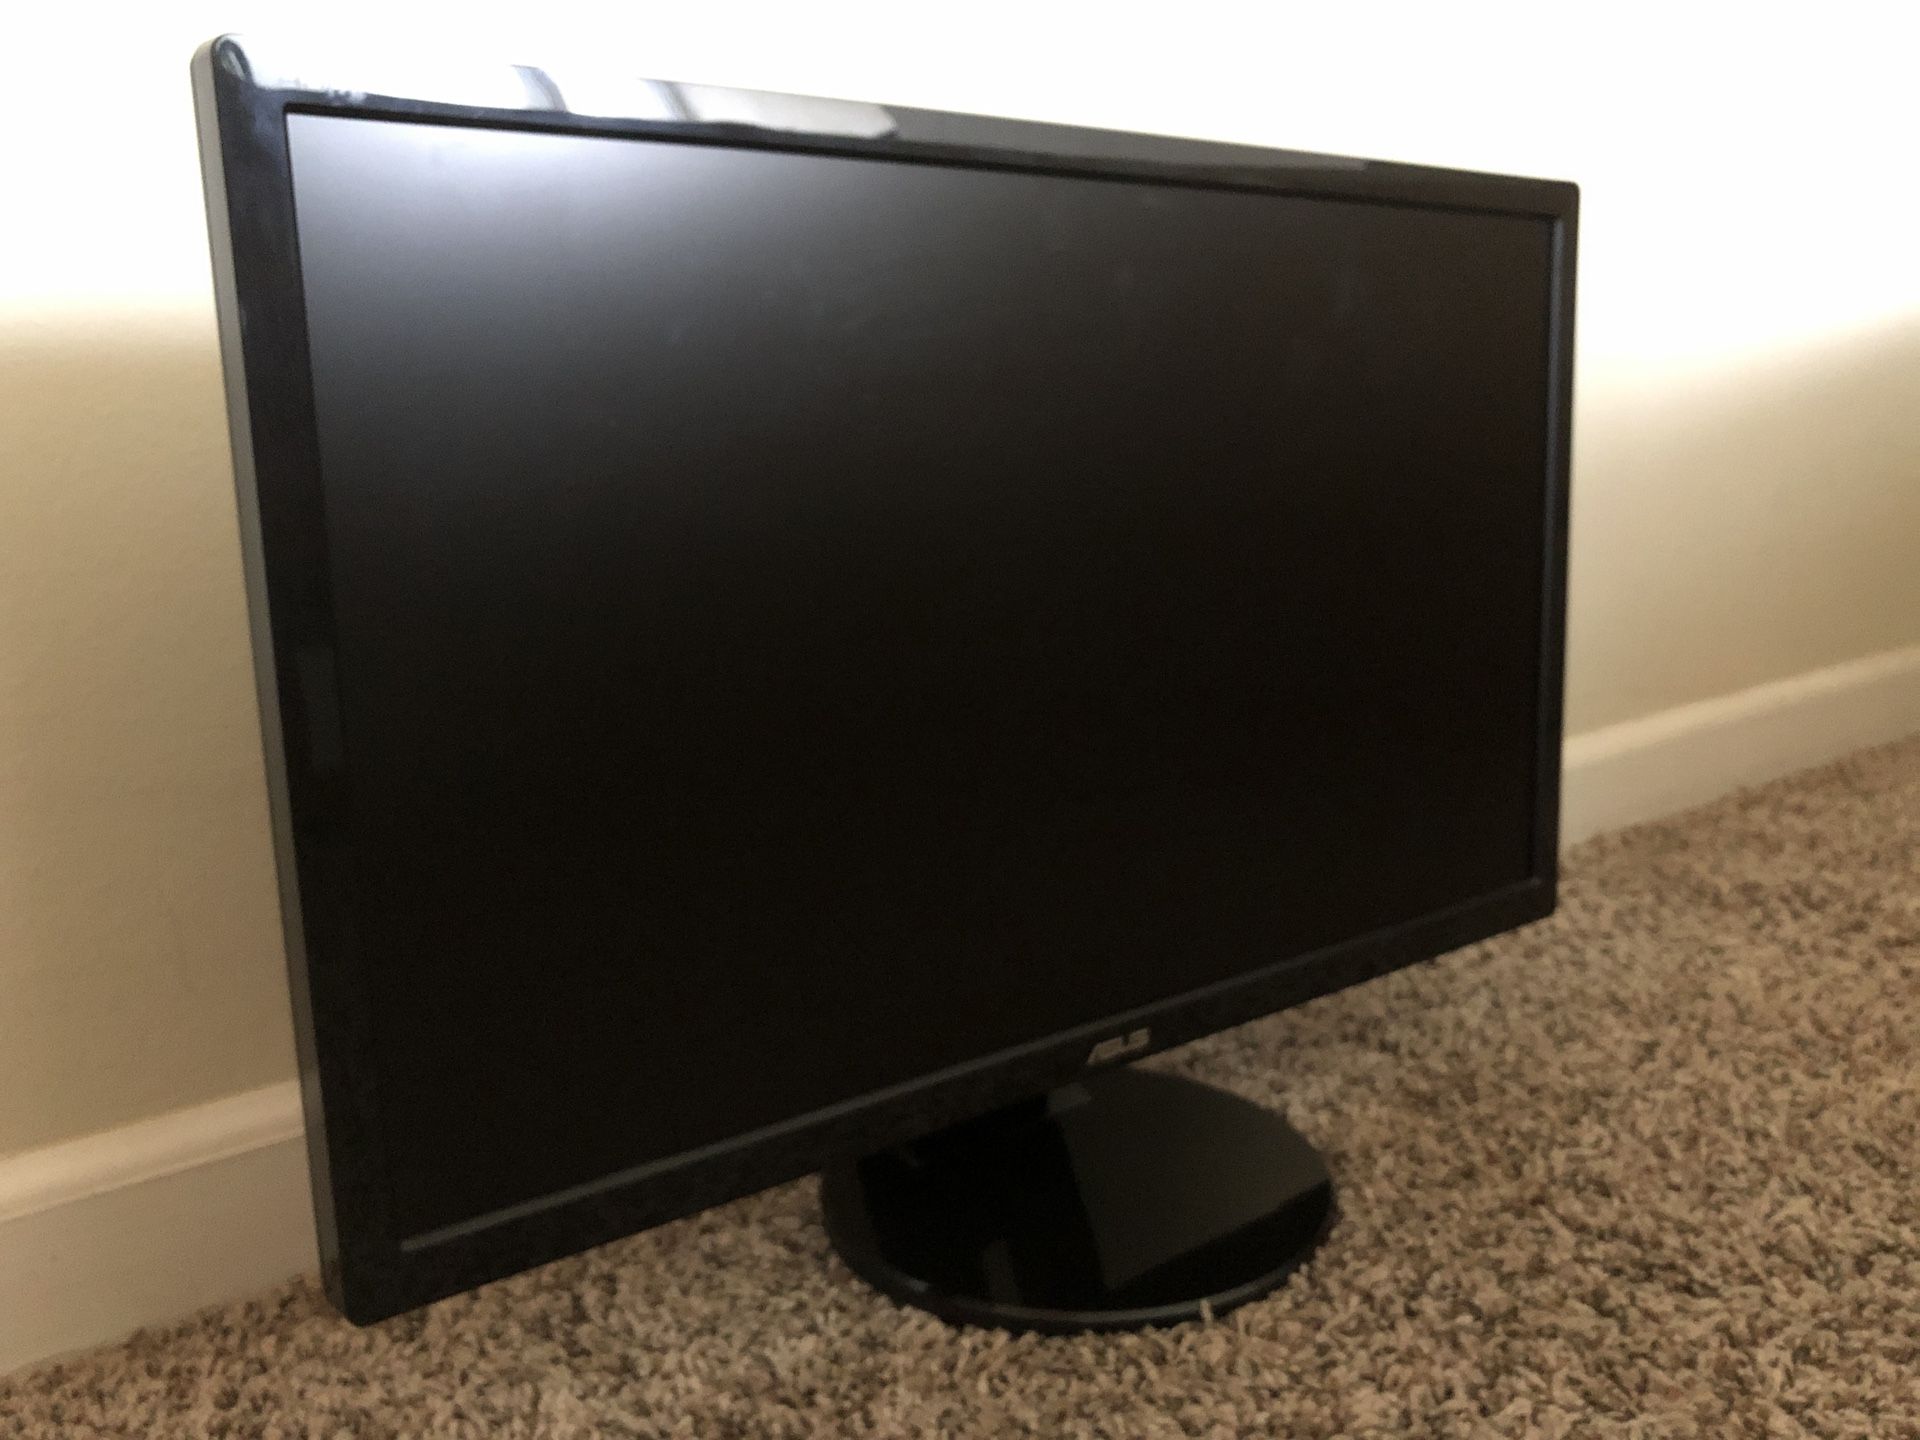 Computer Monitors (1080p 24" and 1440p 27")